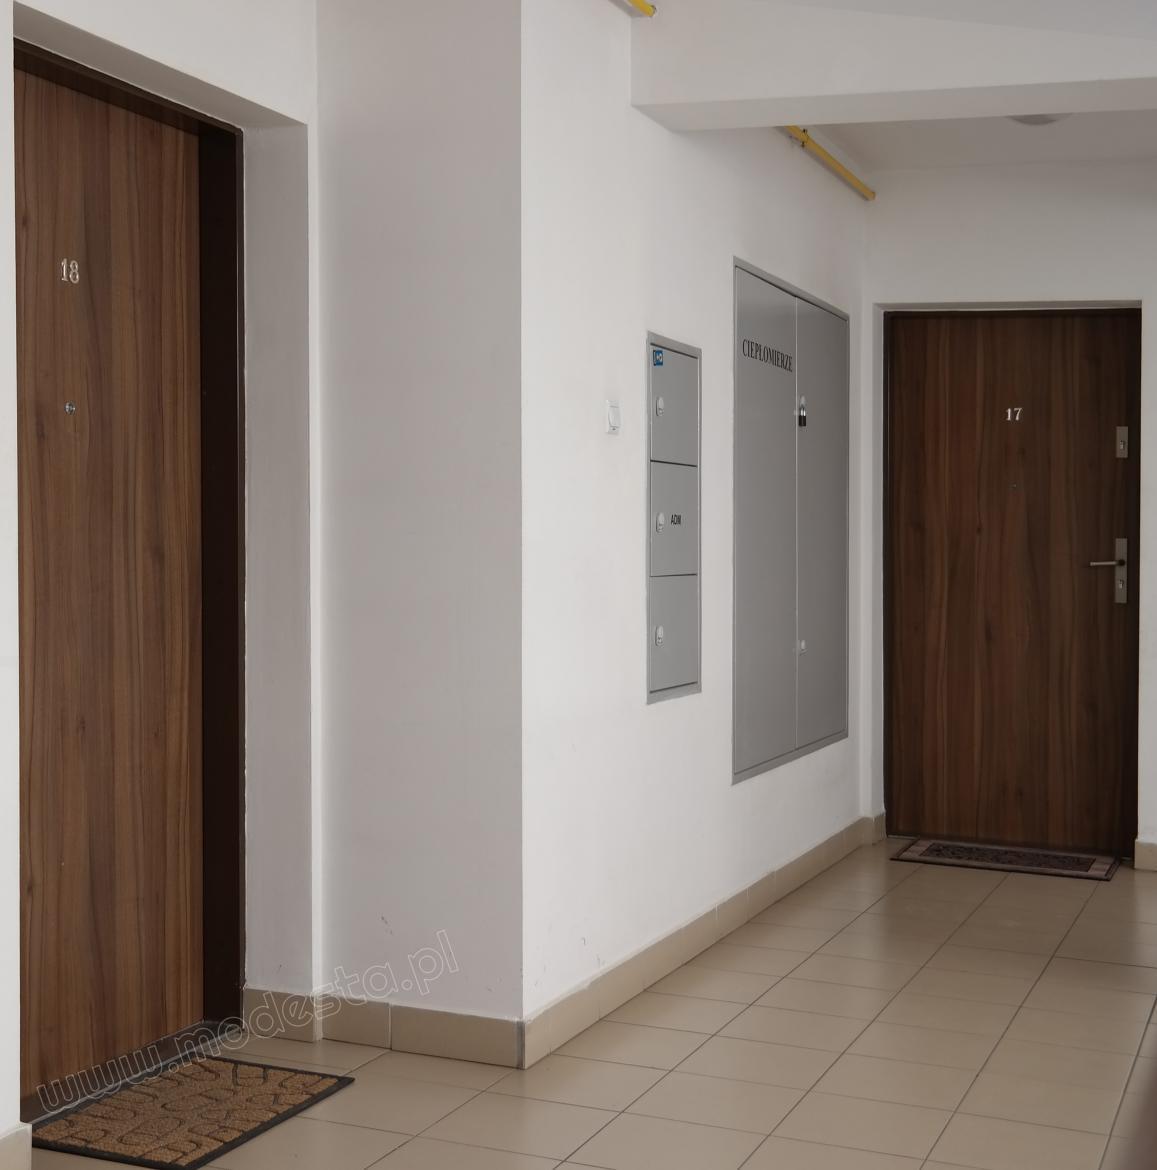 The successful arrangement of wooden anti-burglar doors